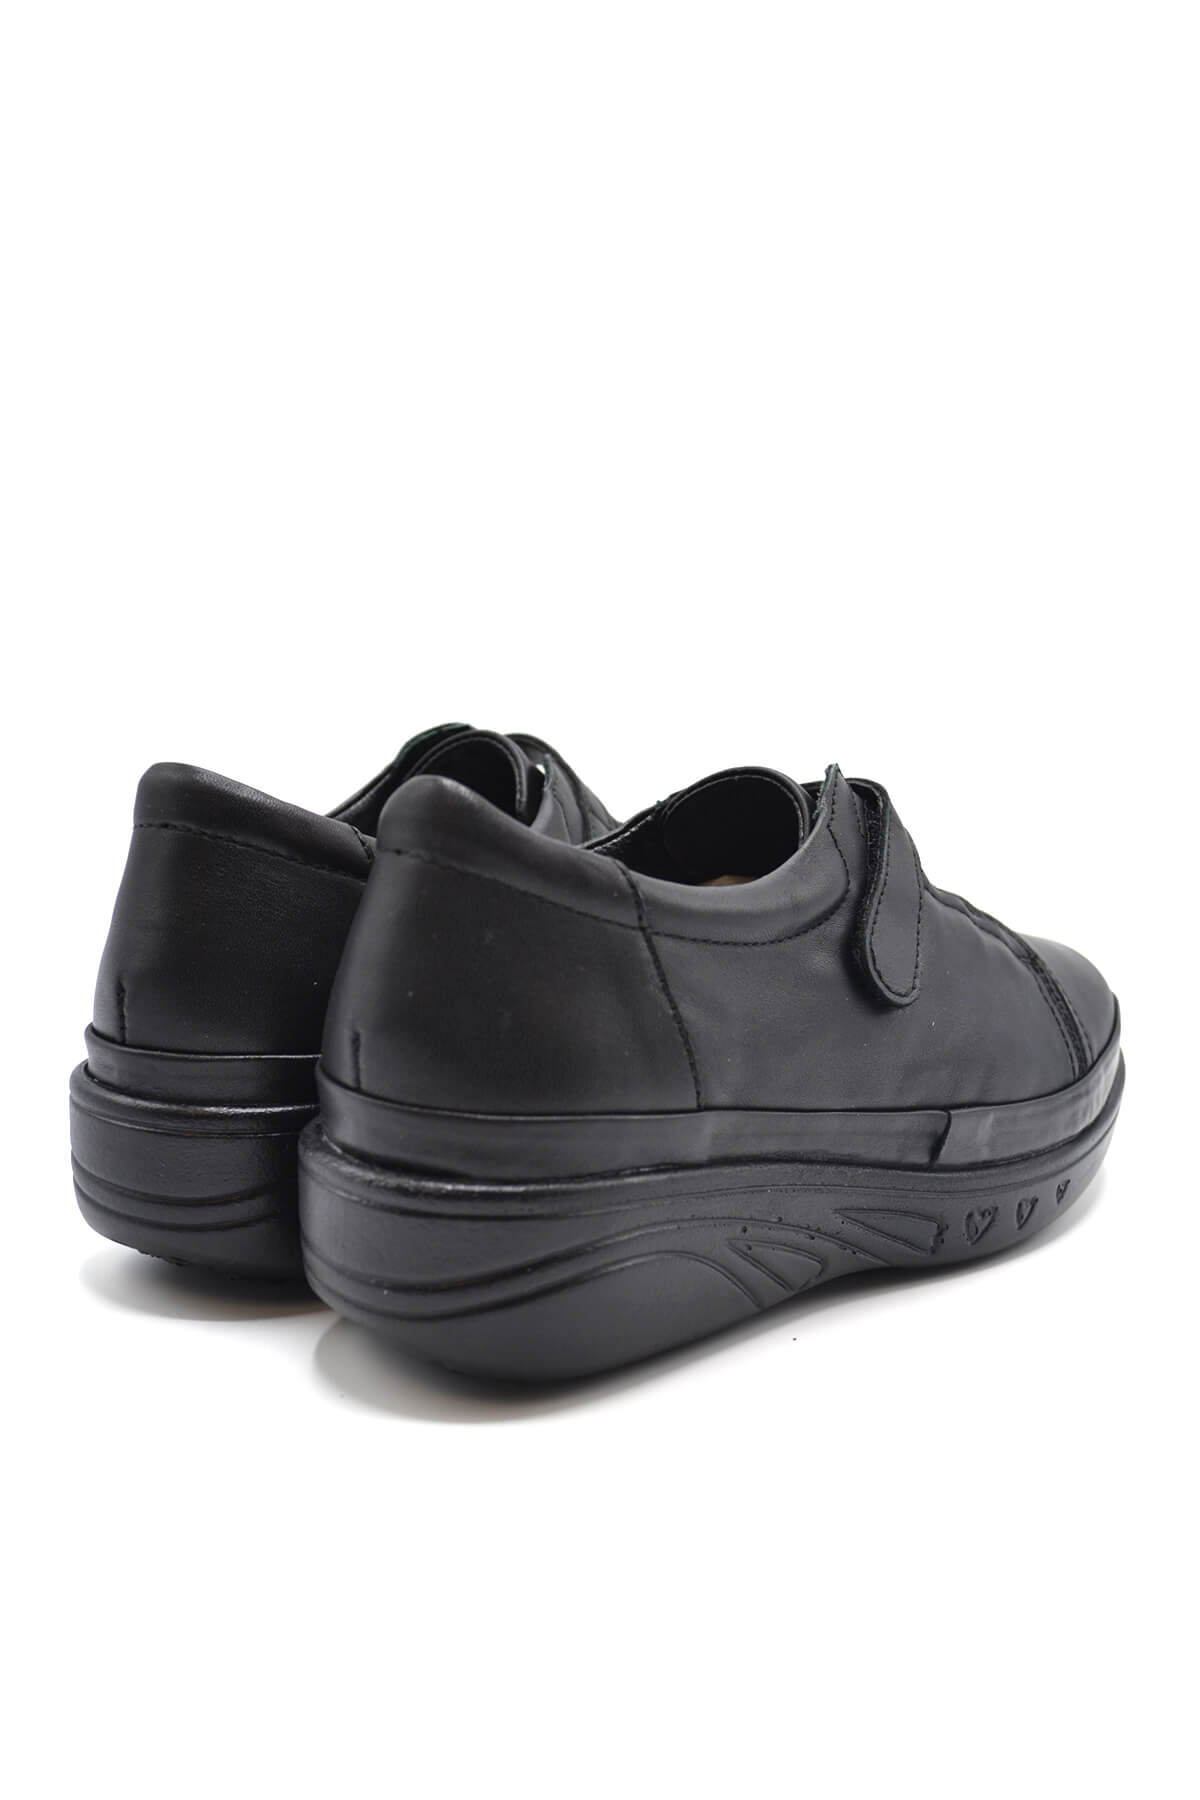 Kadın Comfort Deri Ayakkabı Siyah 1820524K